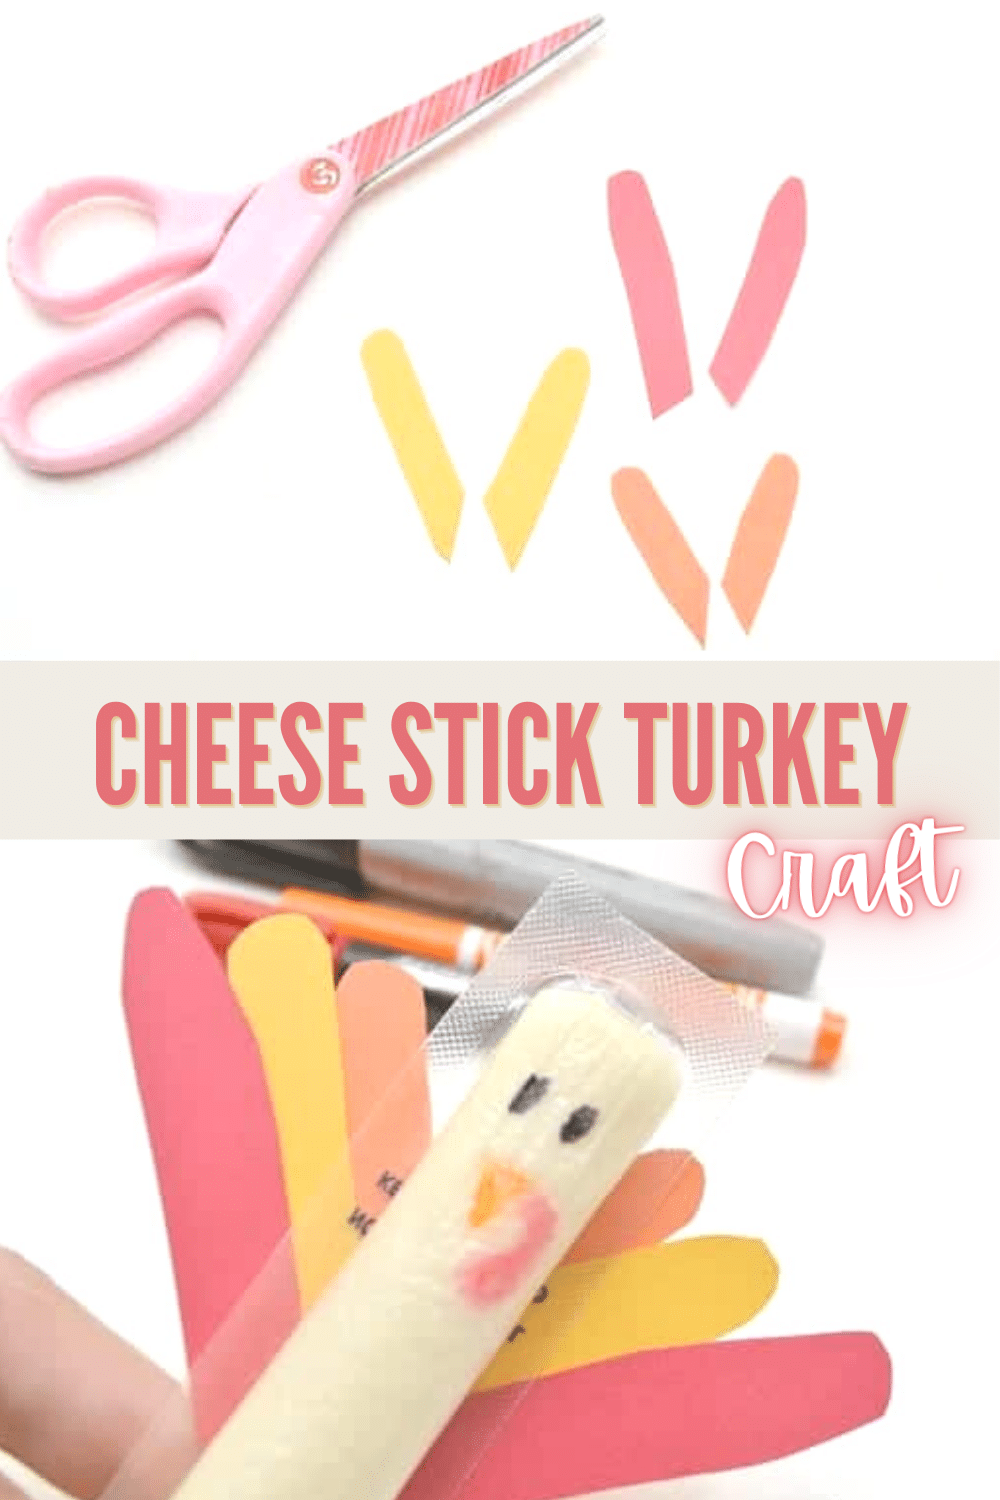 Cheese stick turkey craft for kids.